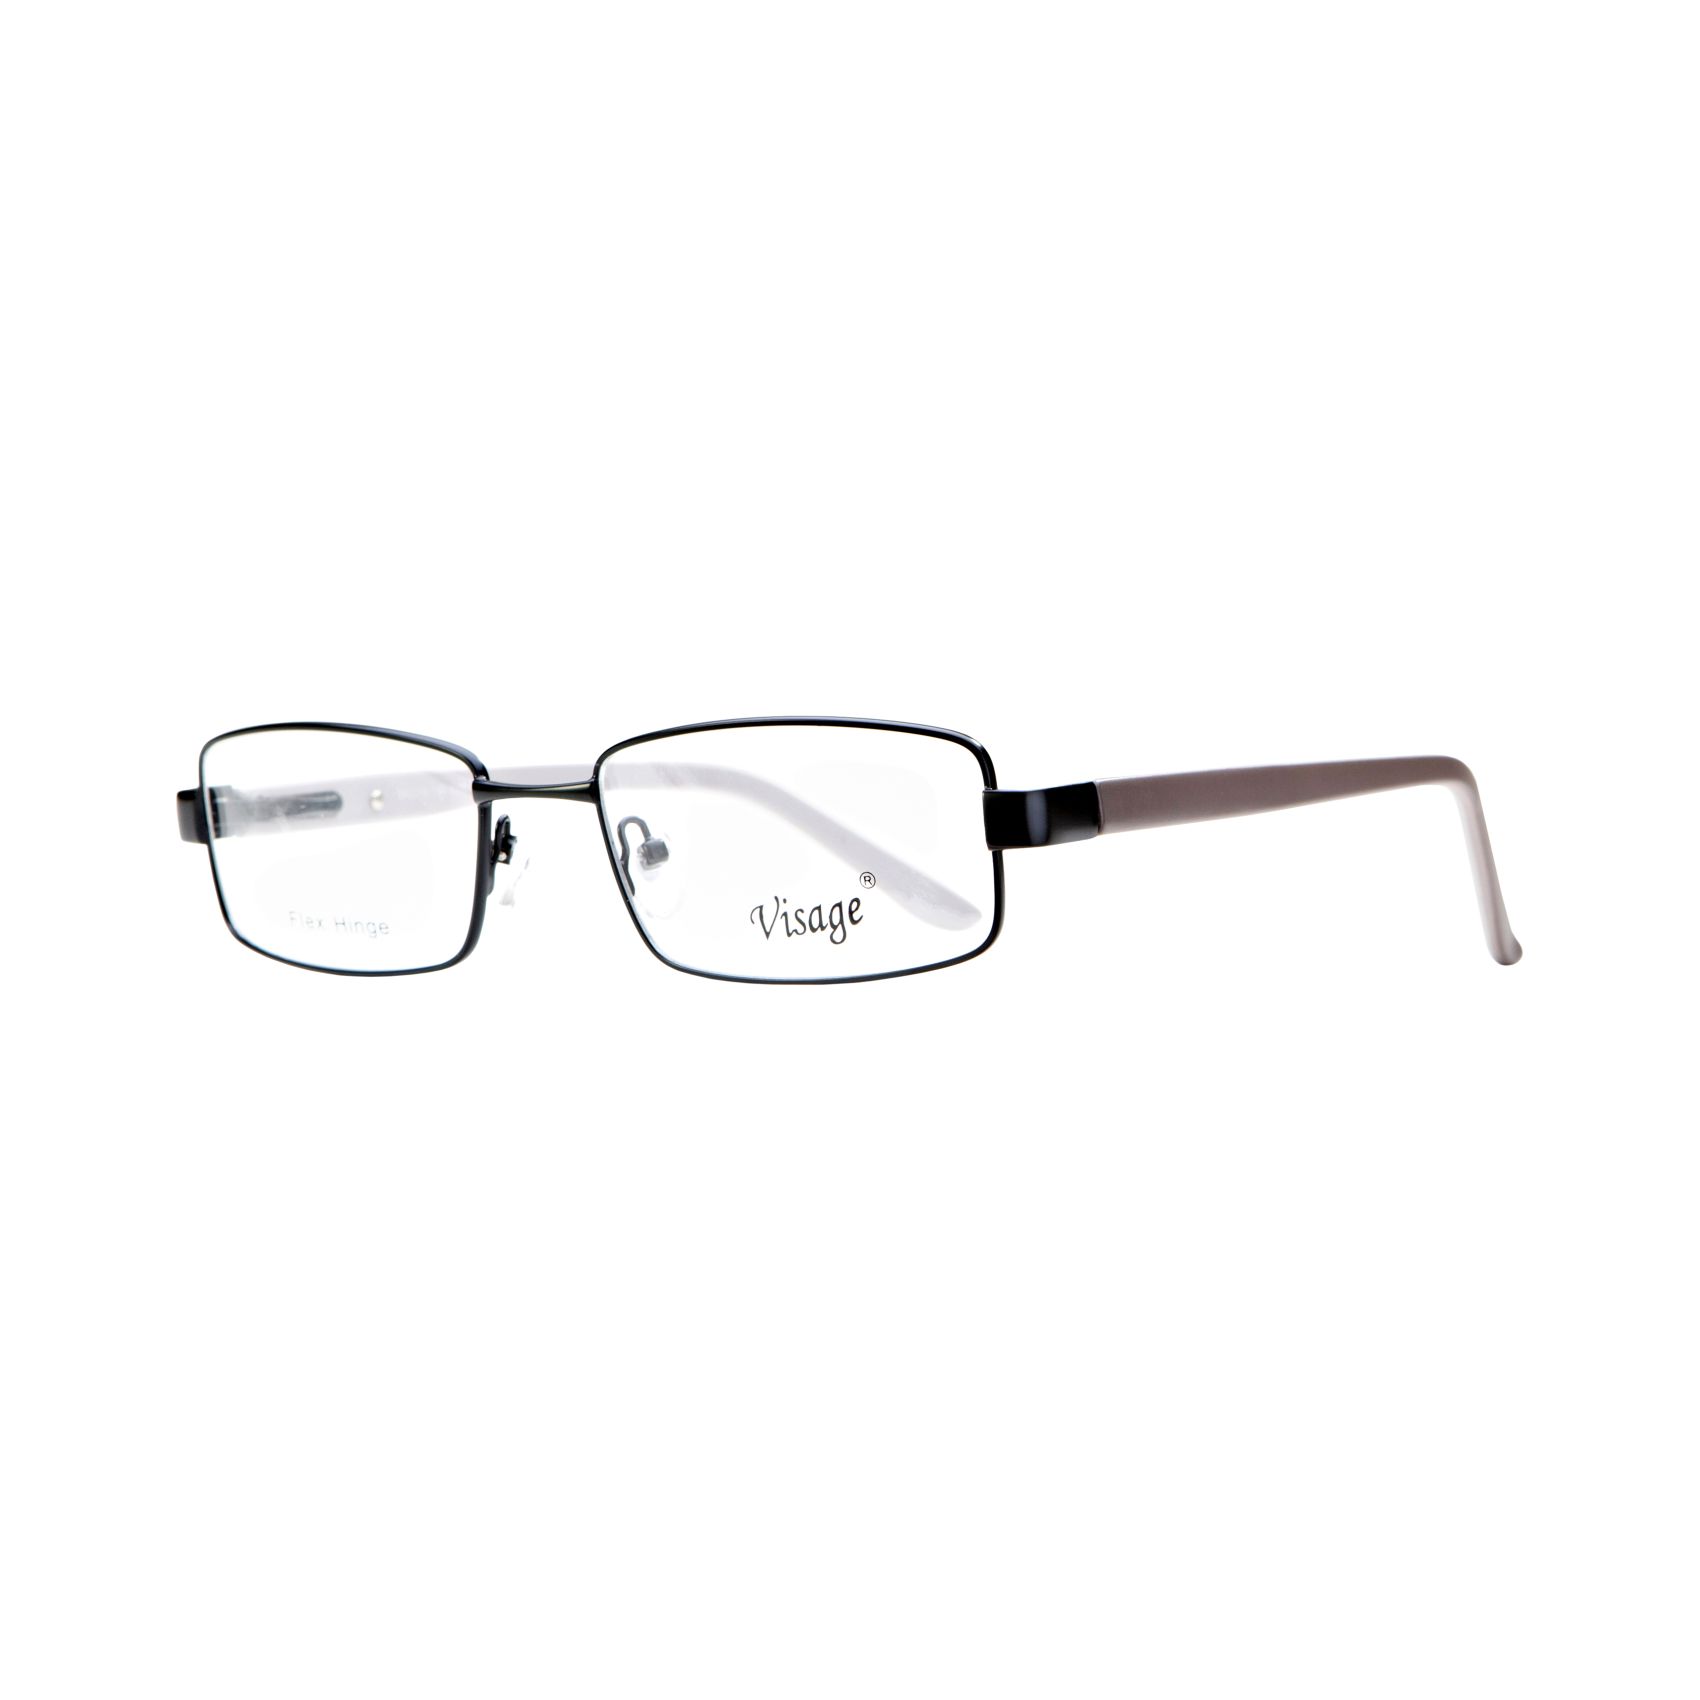 Visage 4503 - Glasses Complete